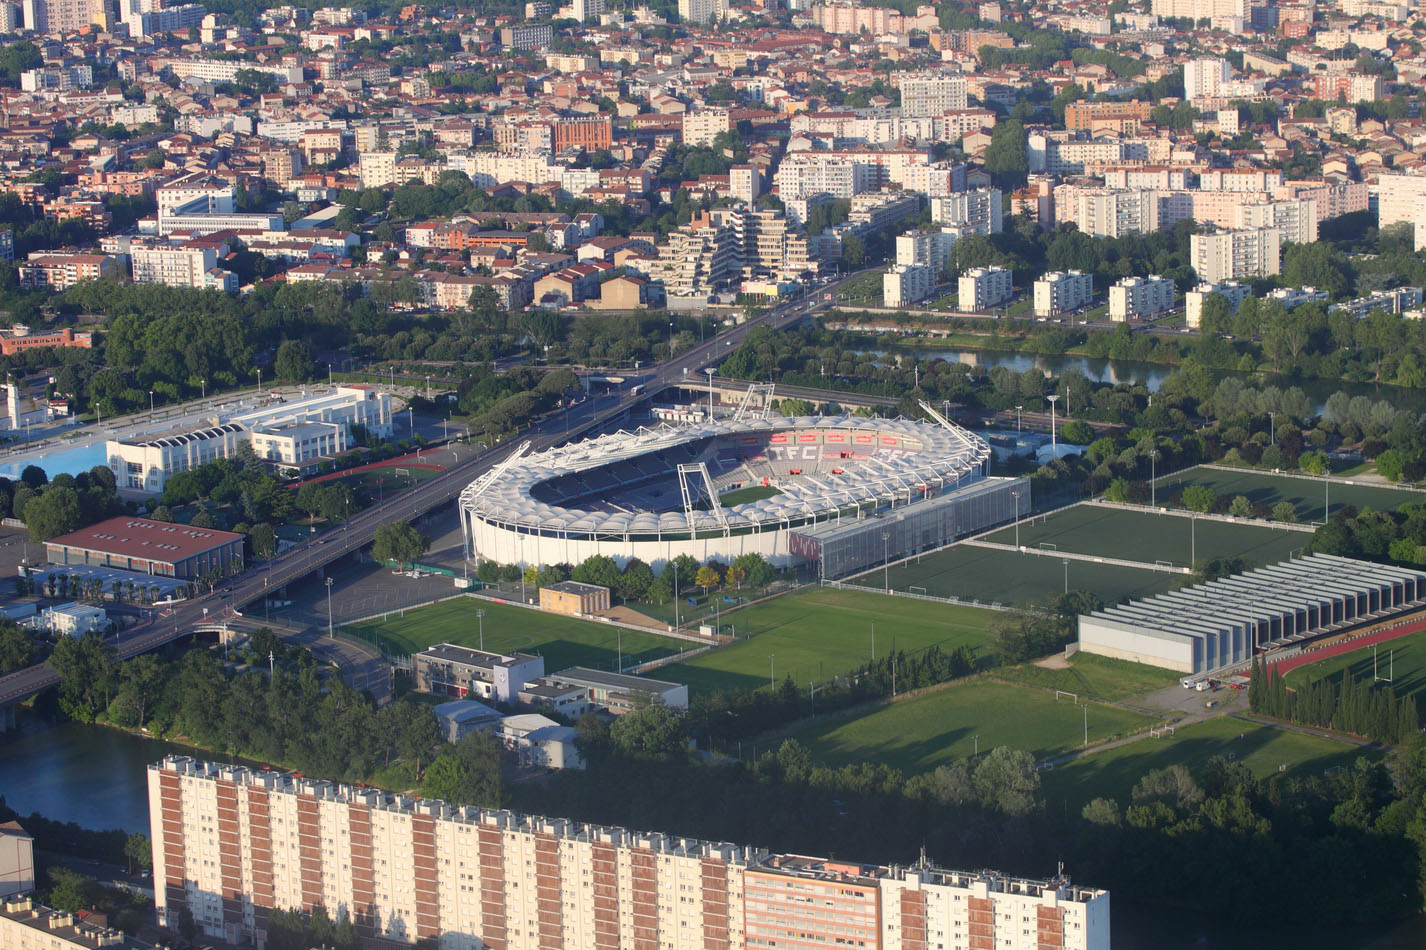 Муниципальный стадион Тулузы